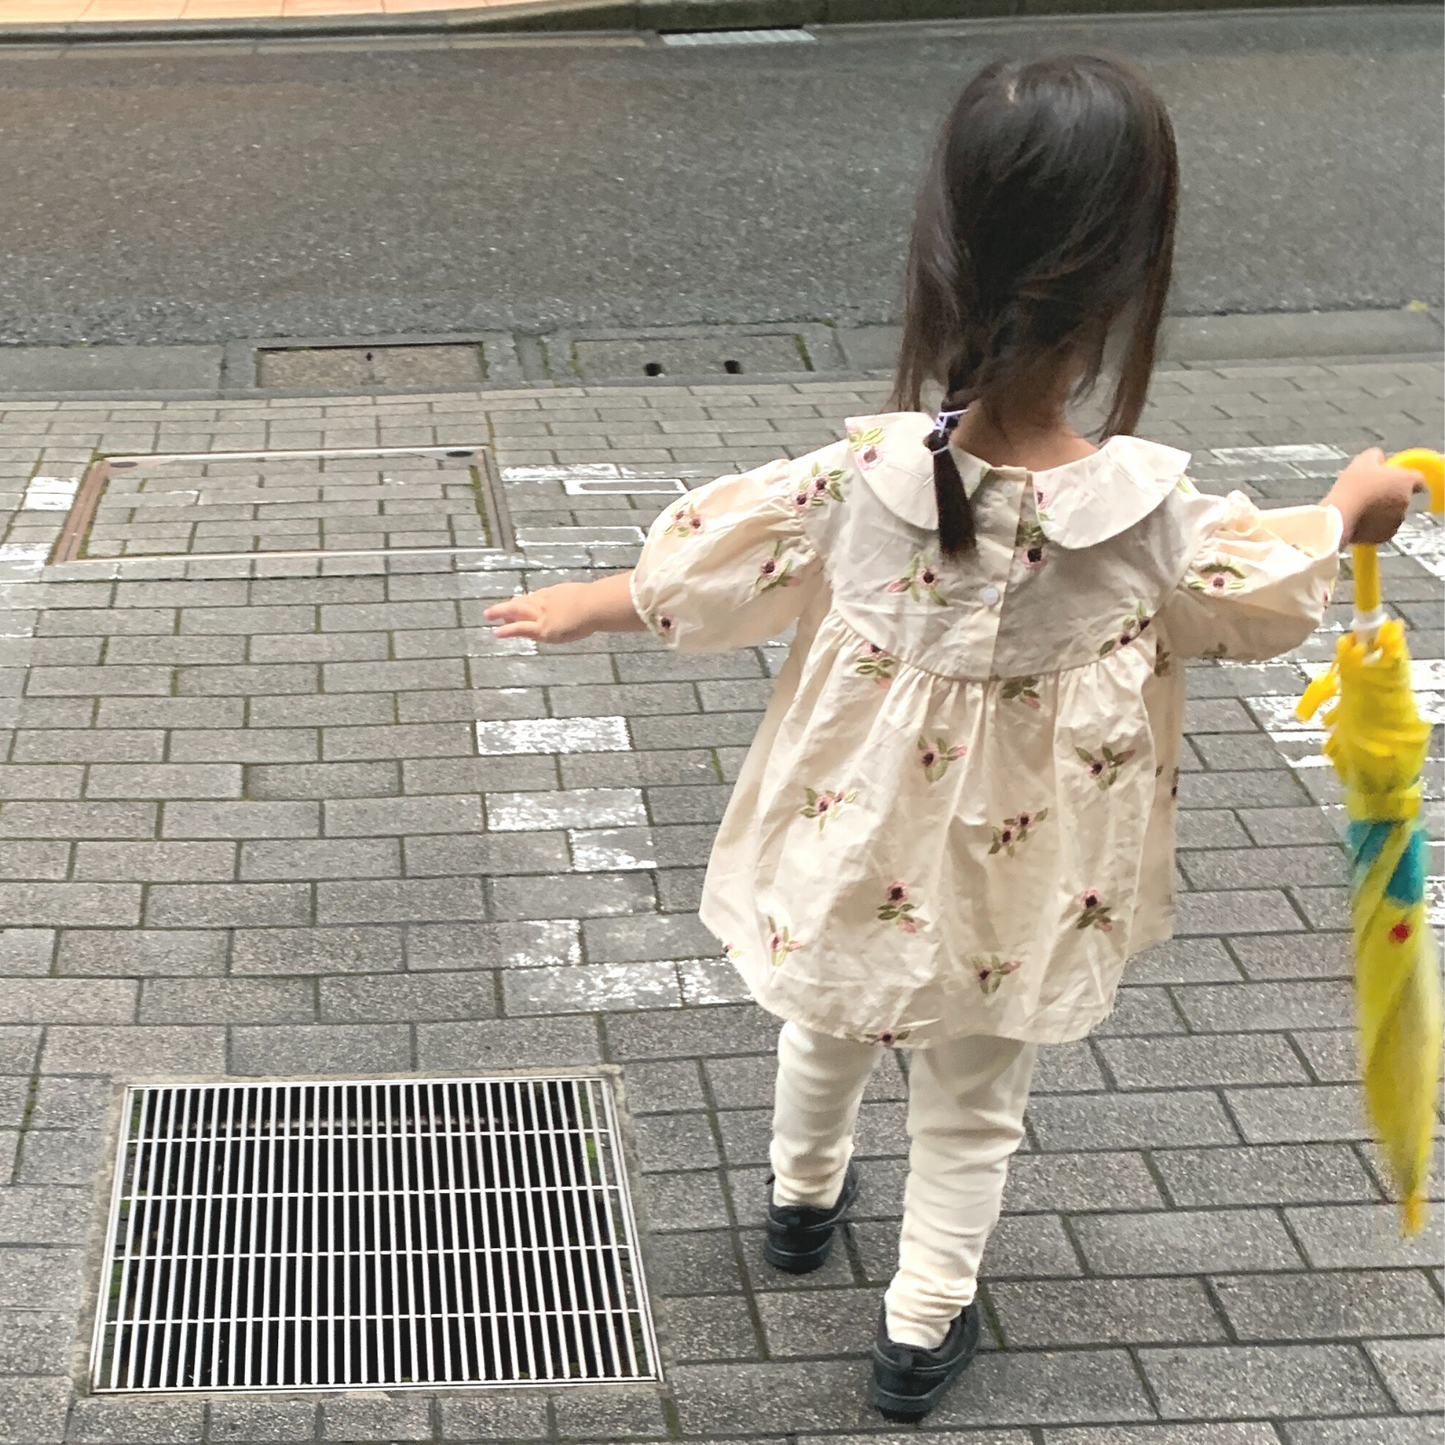 ミニフラワー ショートスリーブ ブラウス / mini flower short sleeve blouse (こども服) - kids clothes shop GUZUGUZU